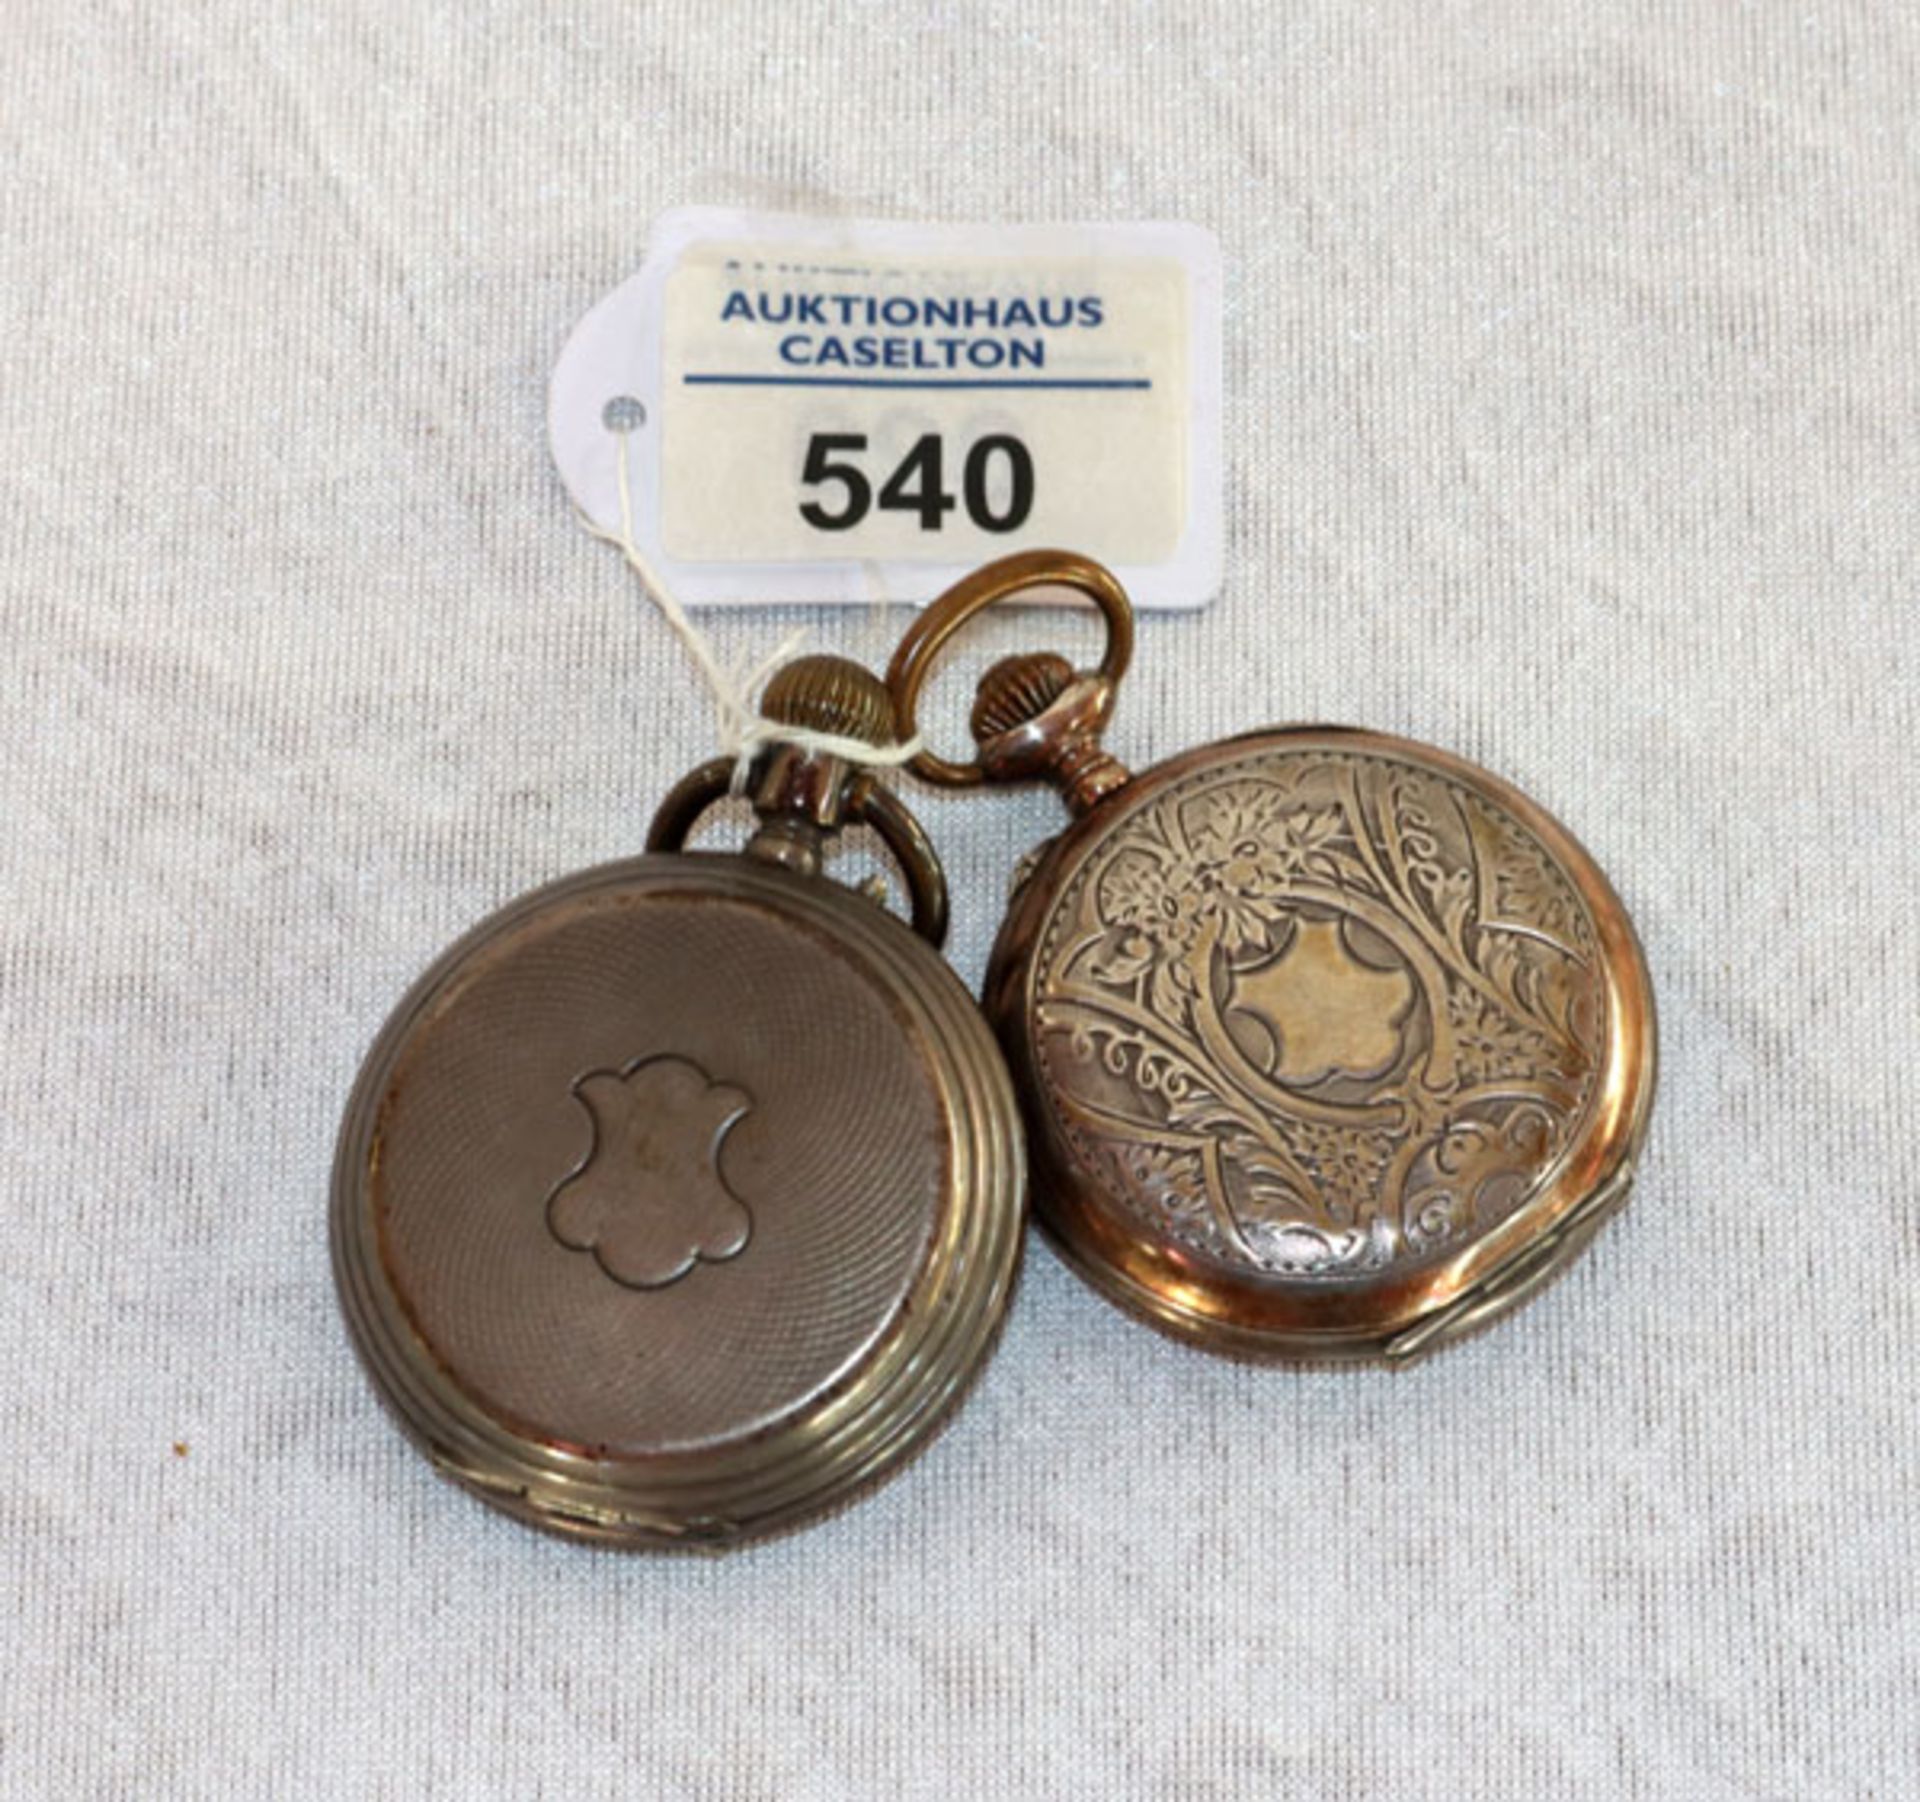 2 Silber Taschenuhren um 1910, gravierte Gehäuse, intakt, D 5 cm, Tragespuren